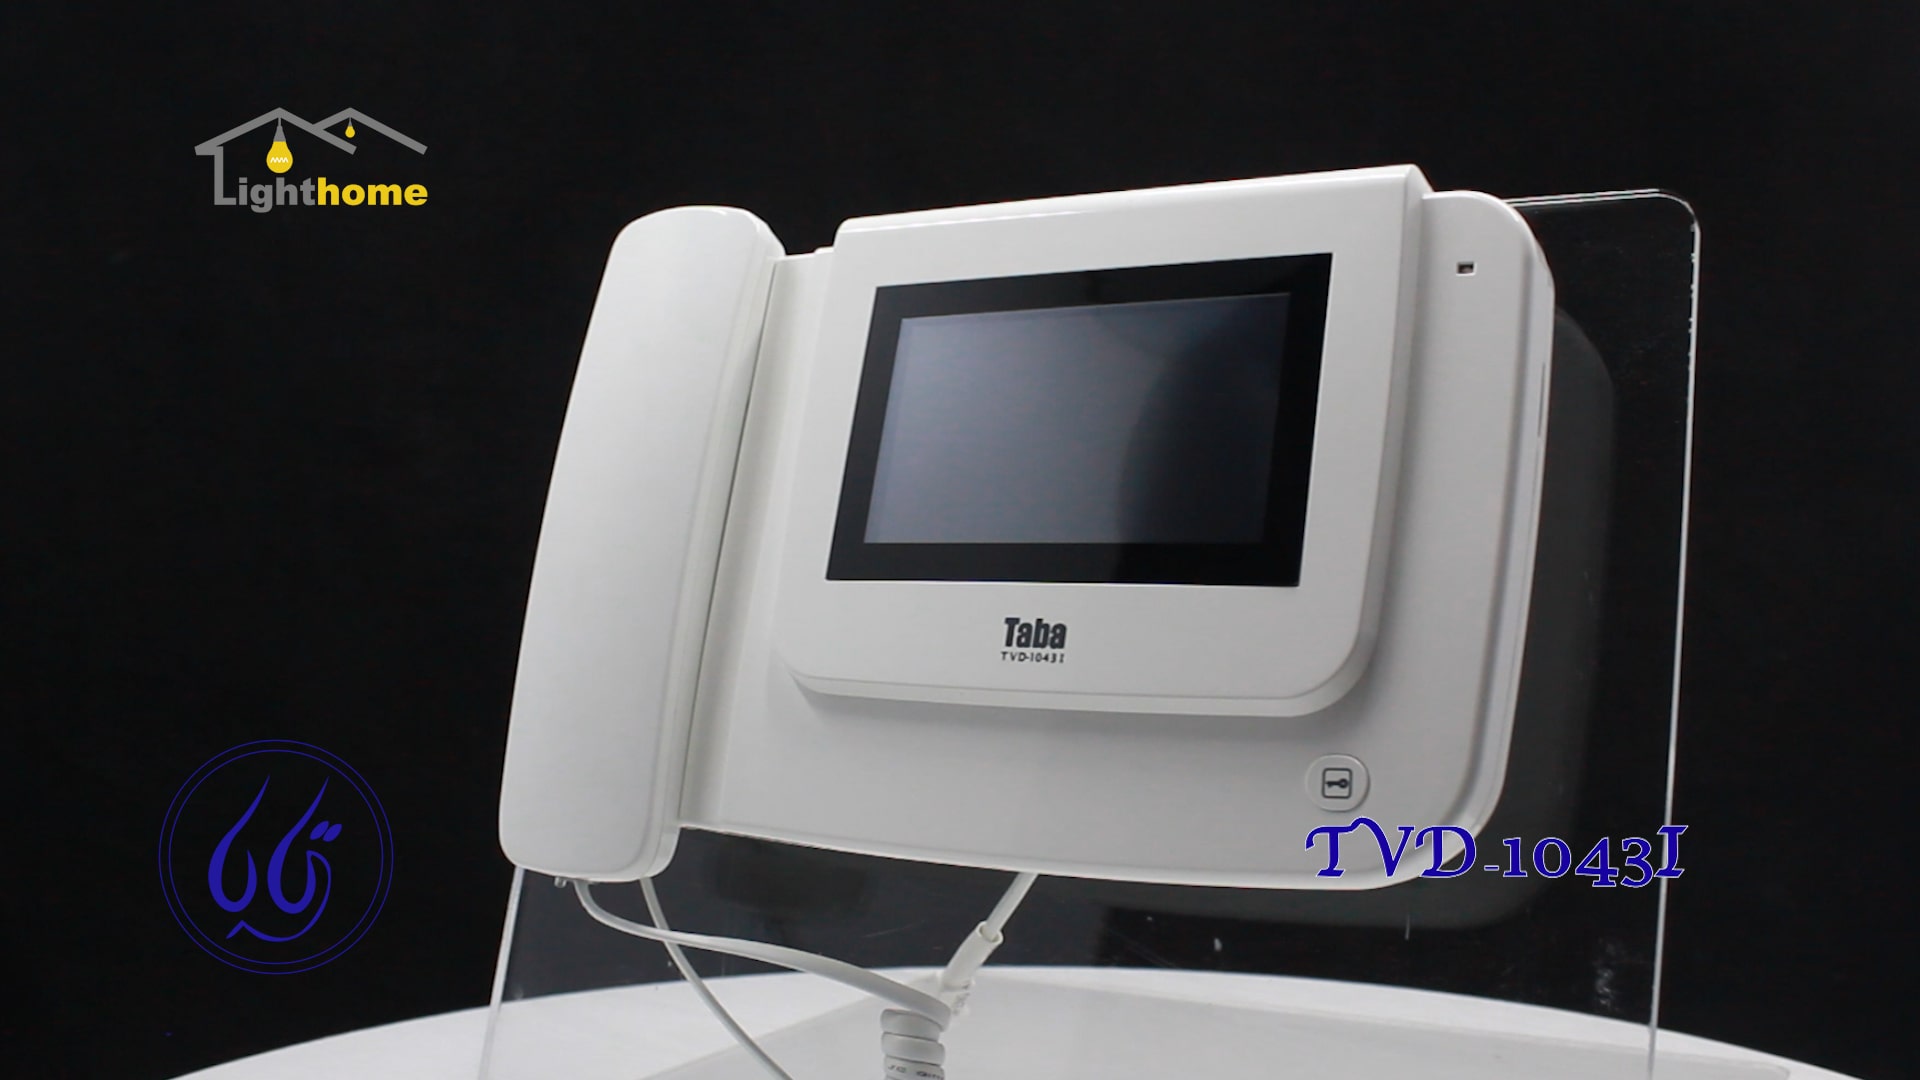 دربازکن تصویری تابا مدل TVD-1043I